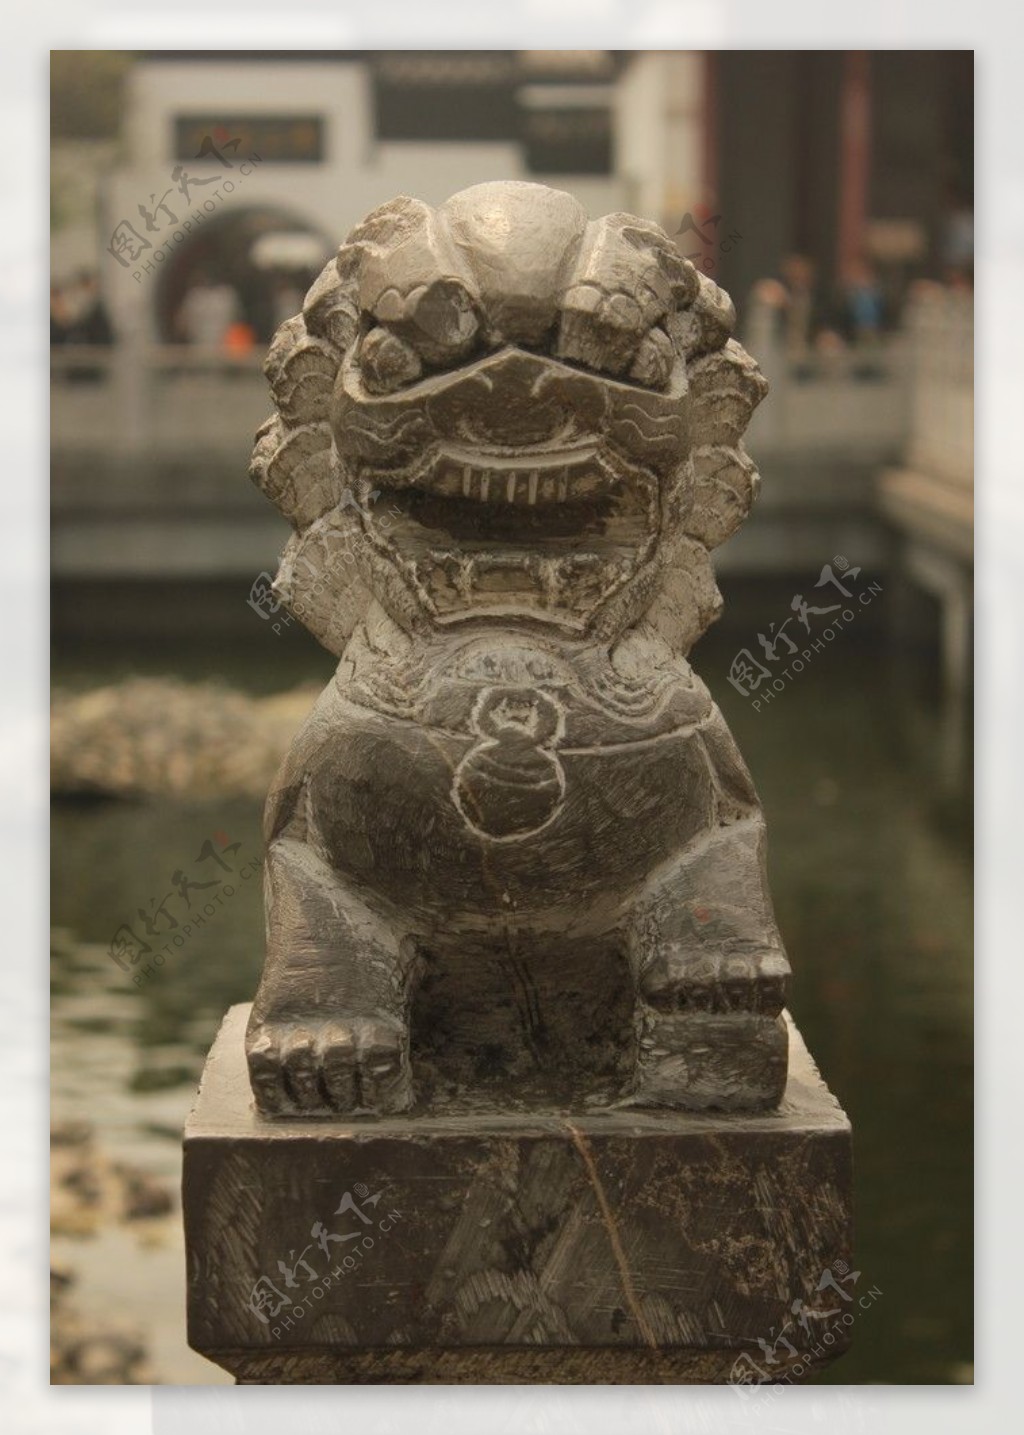 青石石狮 - 1800*1300*85 - 强龙石雕 (中国 山东省 生产商) - 雕塑 - 工艺、饰品 产品 「自助贸易」